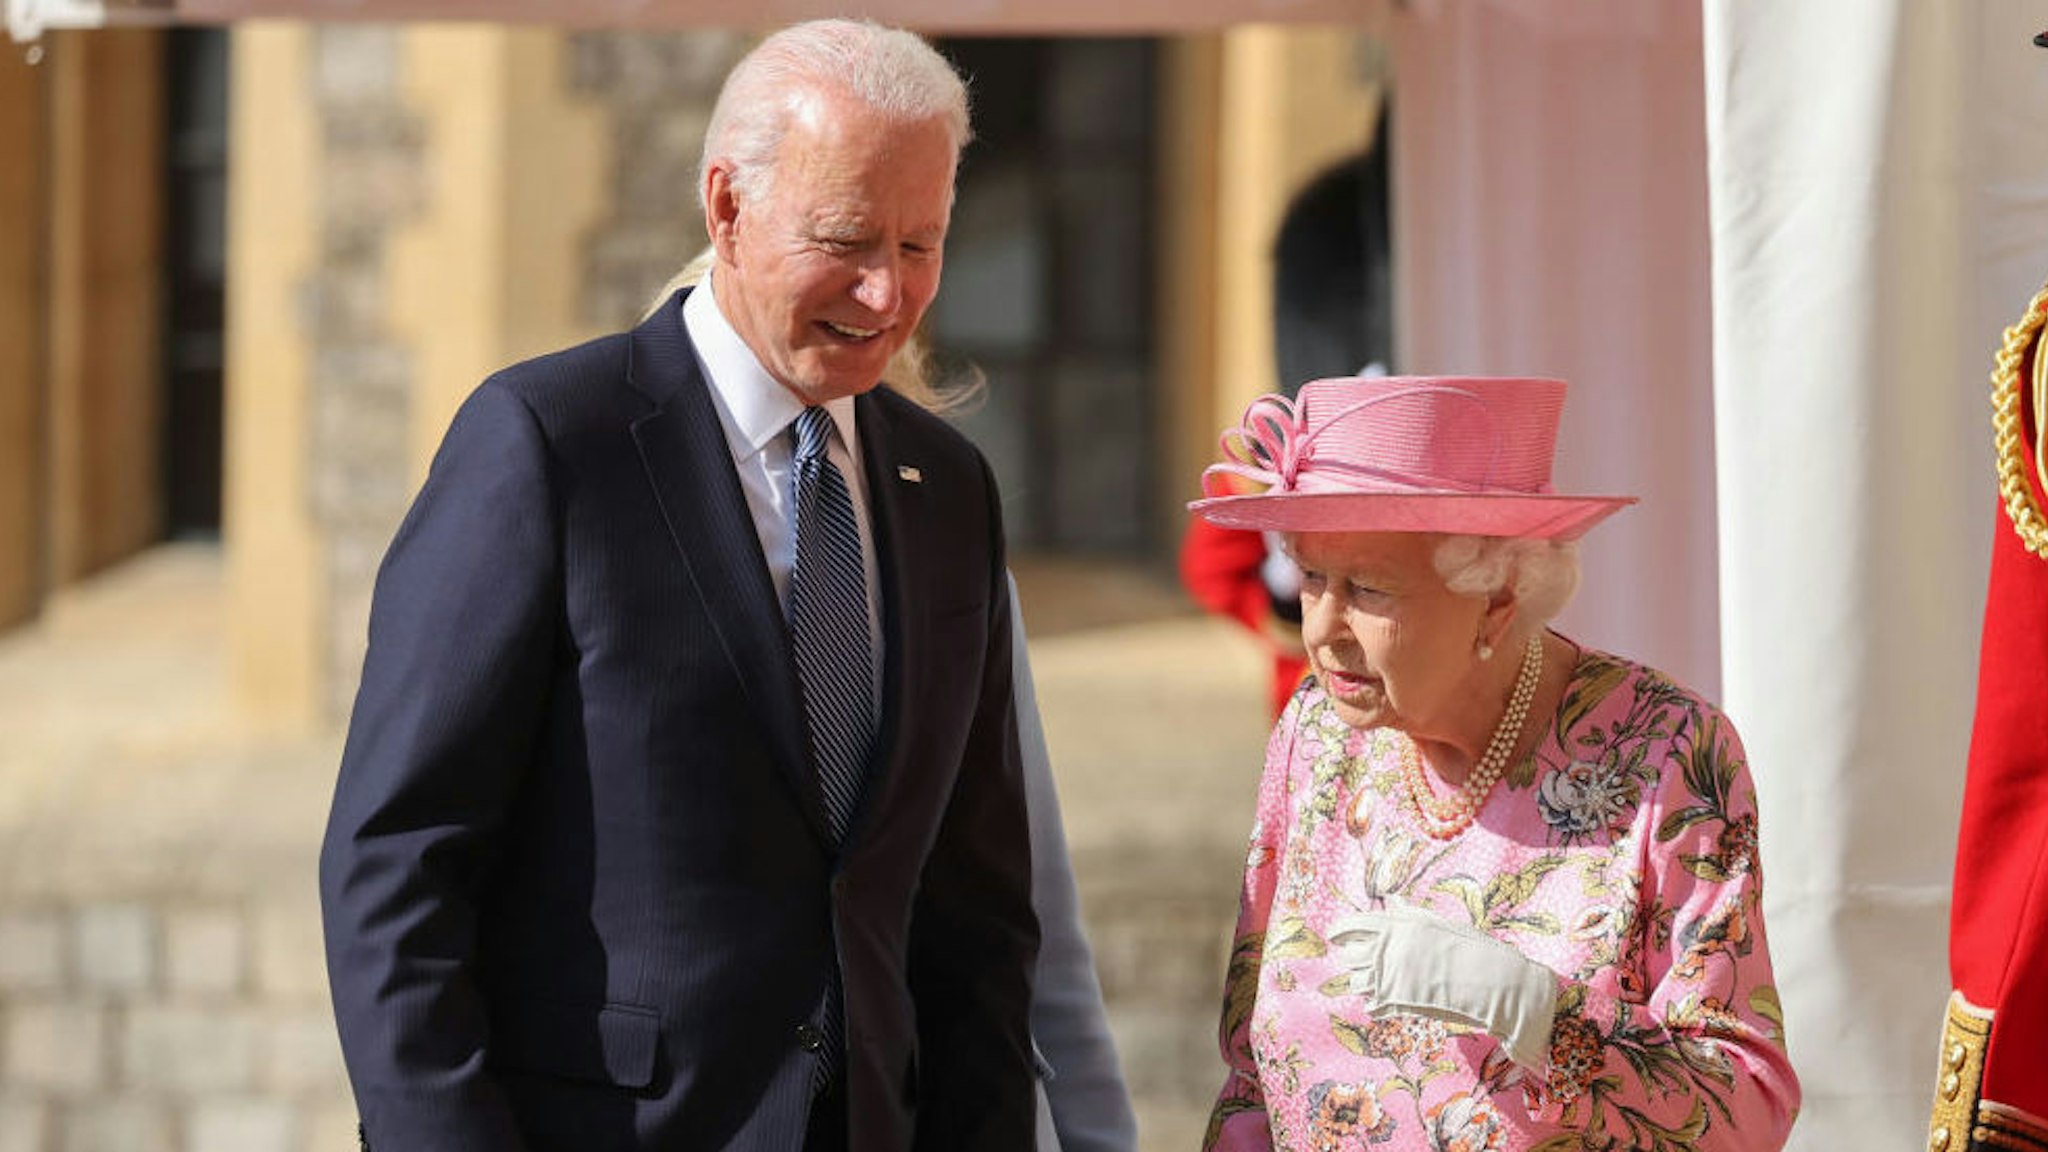 US President Joe Biden and Queen Elizabeth II at Windsor Castle on June 13, 2021 in Windsor, England.